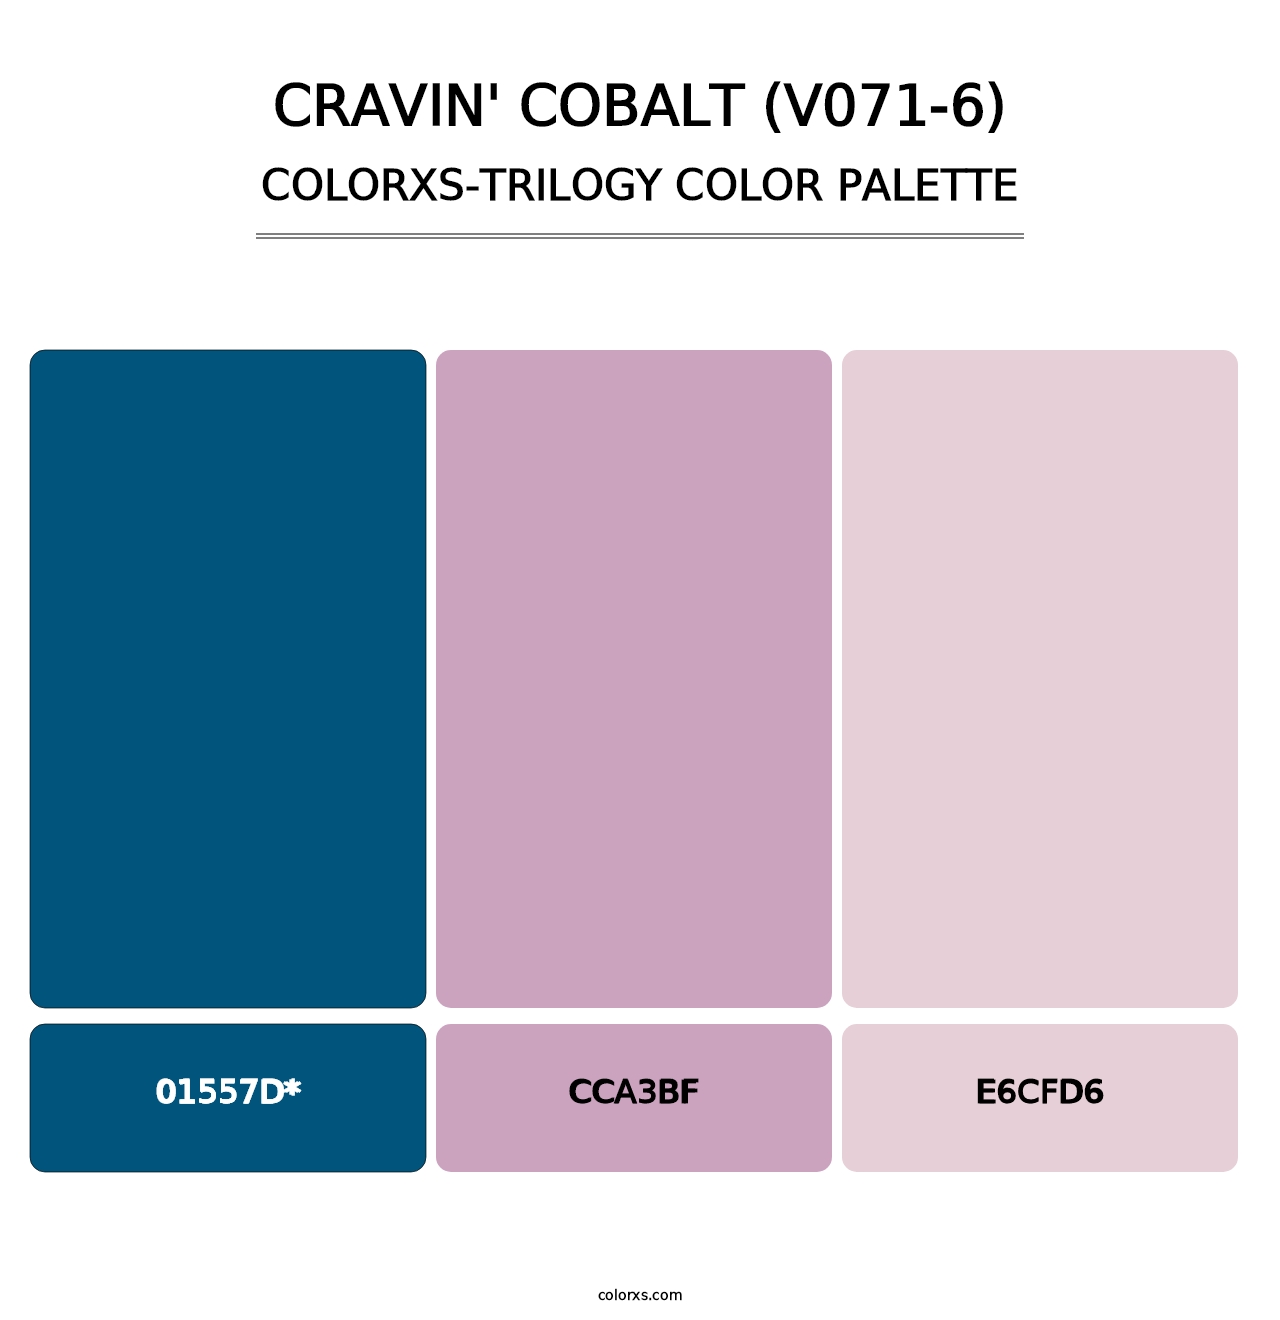 Cravin' Cobalt (V071-6) - Colorxs Trilogy Palette